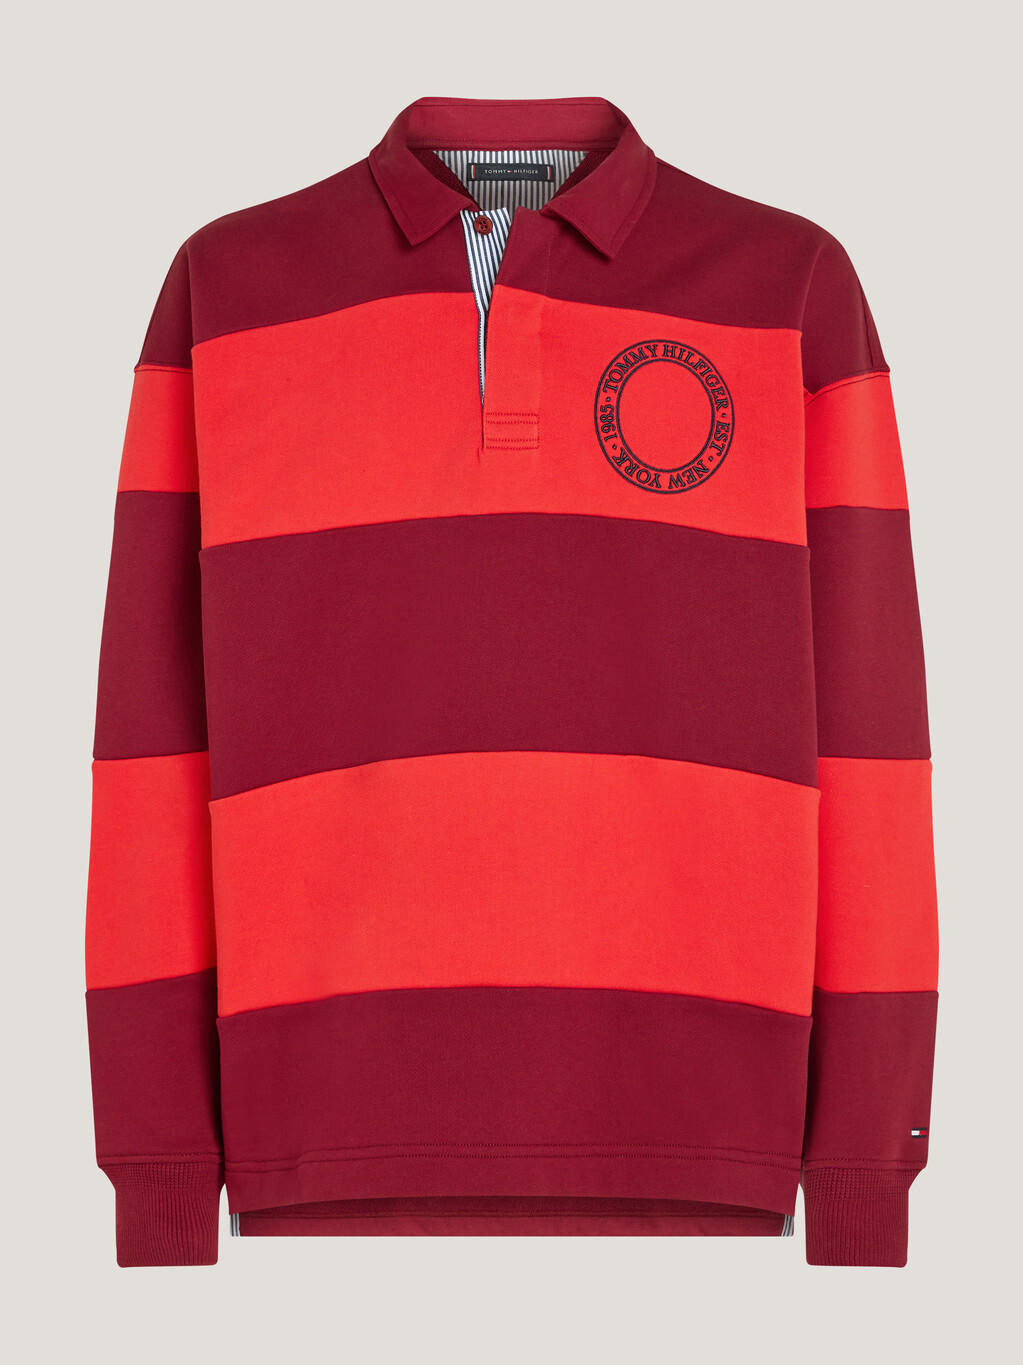 條紋標誌經典橄欖球襯衫禮品裝, Fireworks / Rouge, hi-res